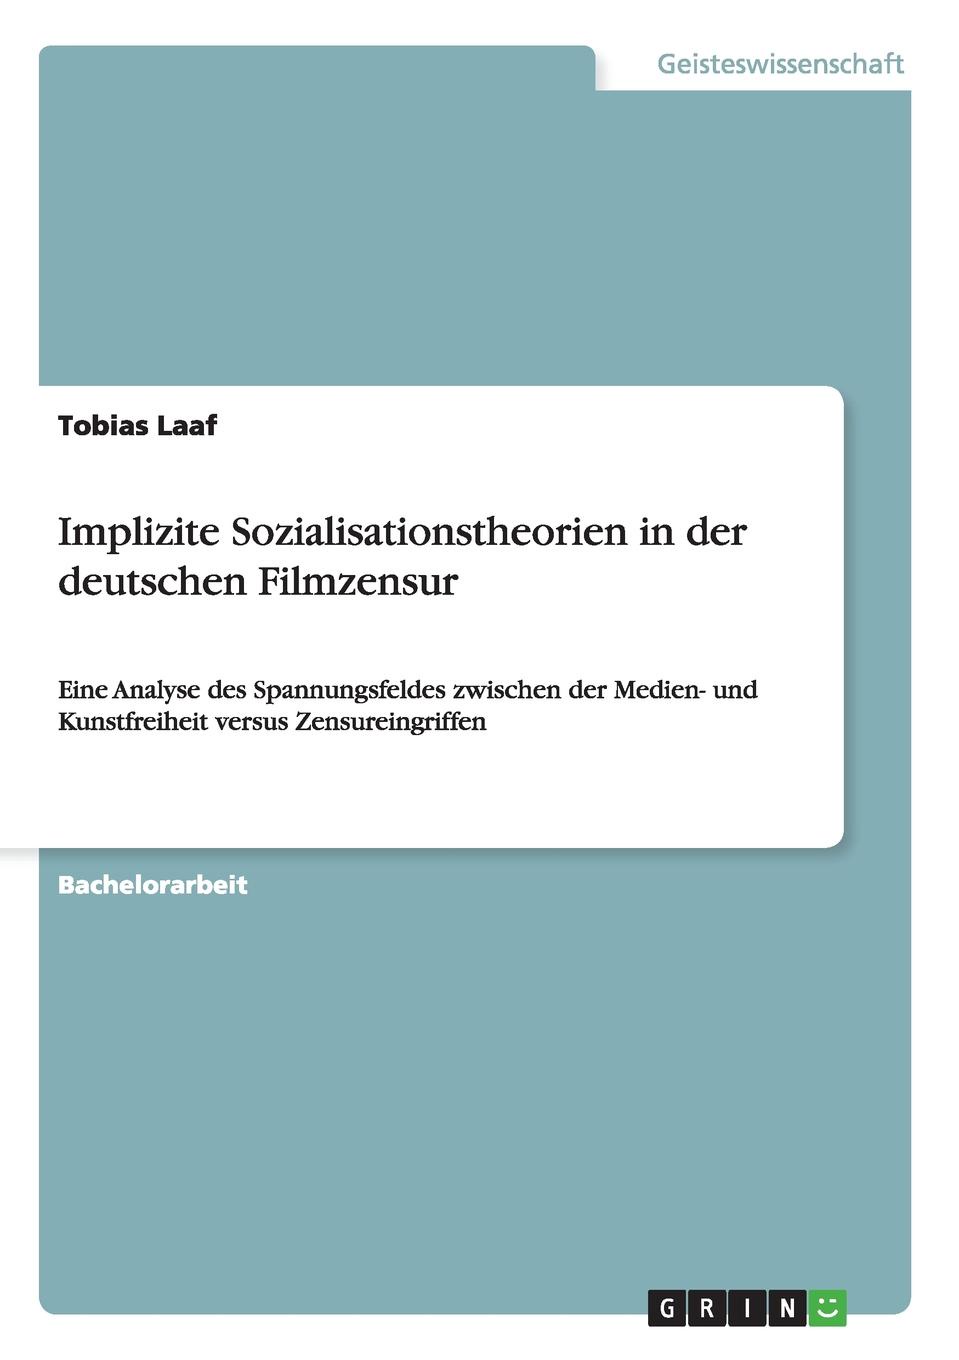 Implizite Sozialisationstheorien in der deutschen Filmzensur